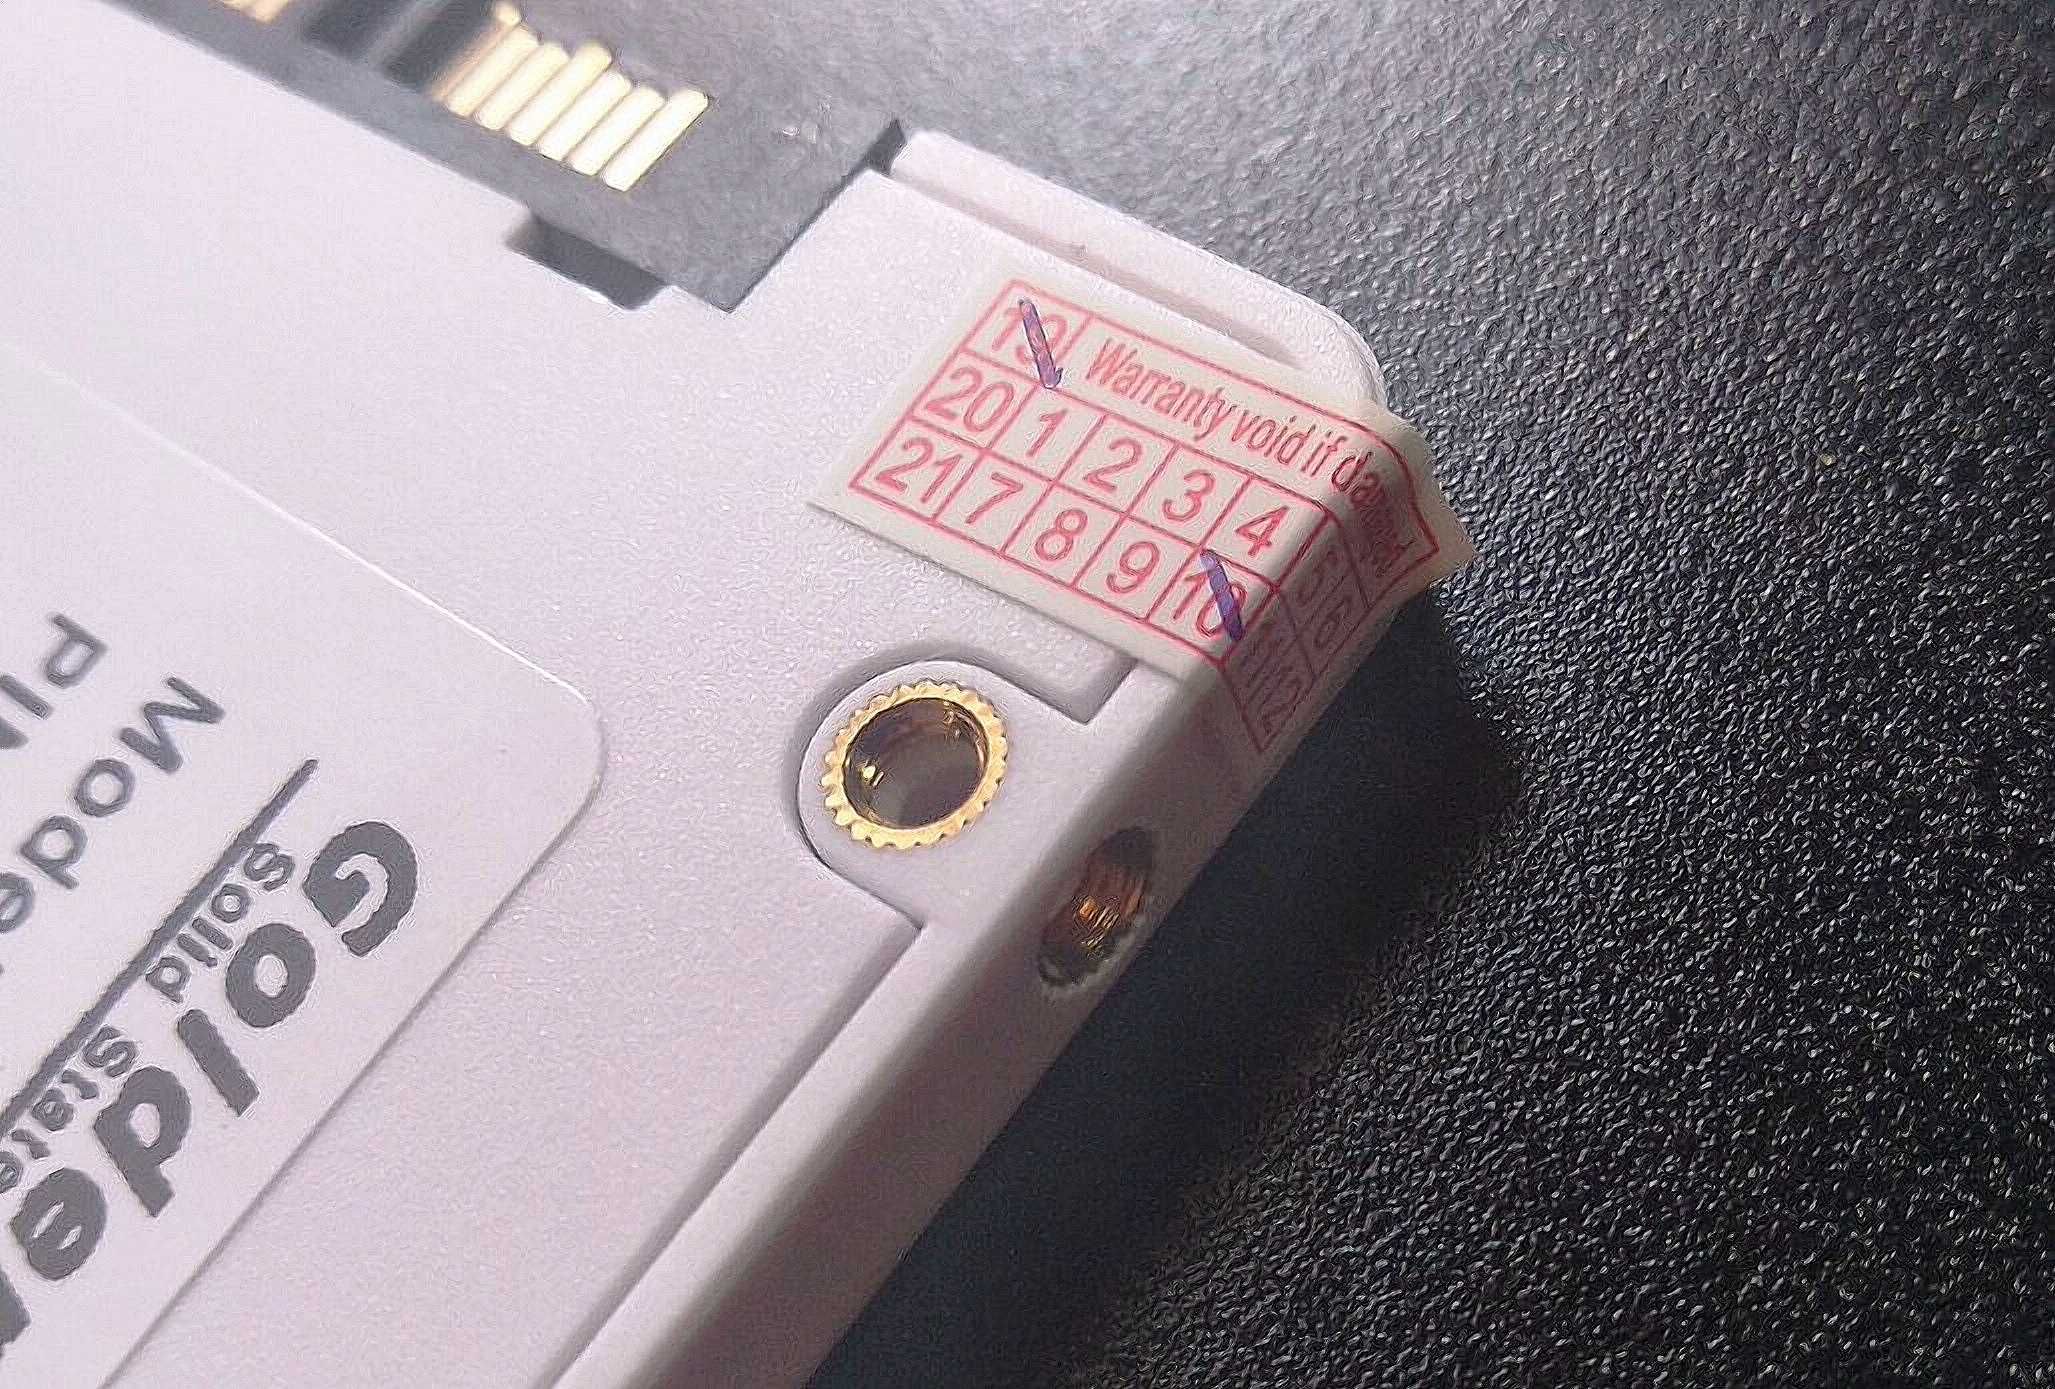 SSD - Goldenfir, 120/256/480 Gb, накопитель, жесткий диск